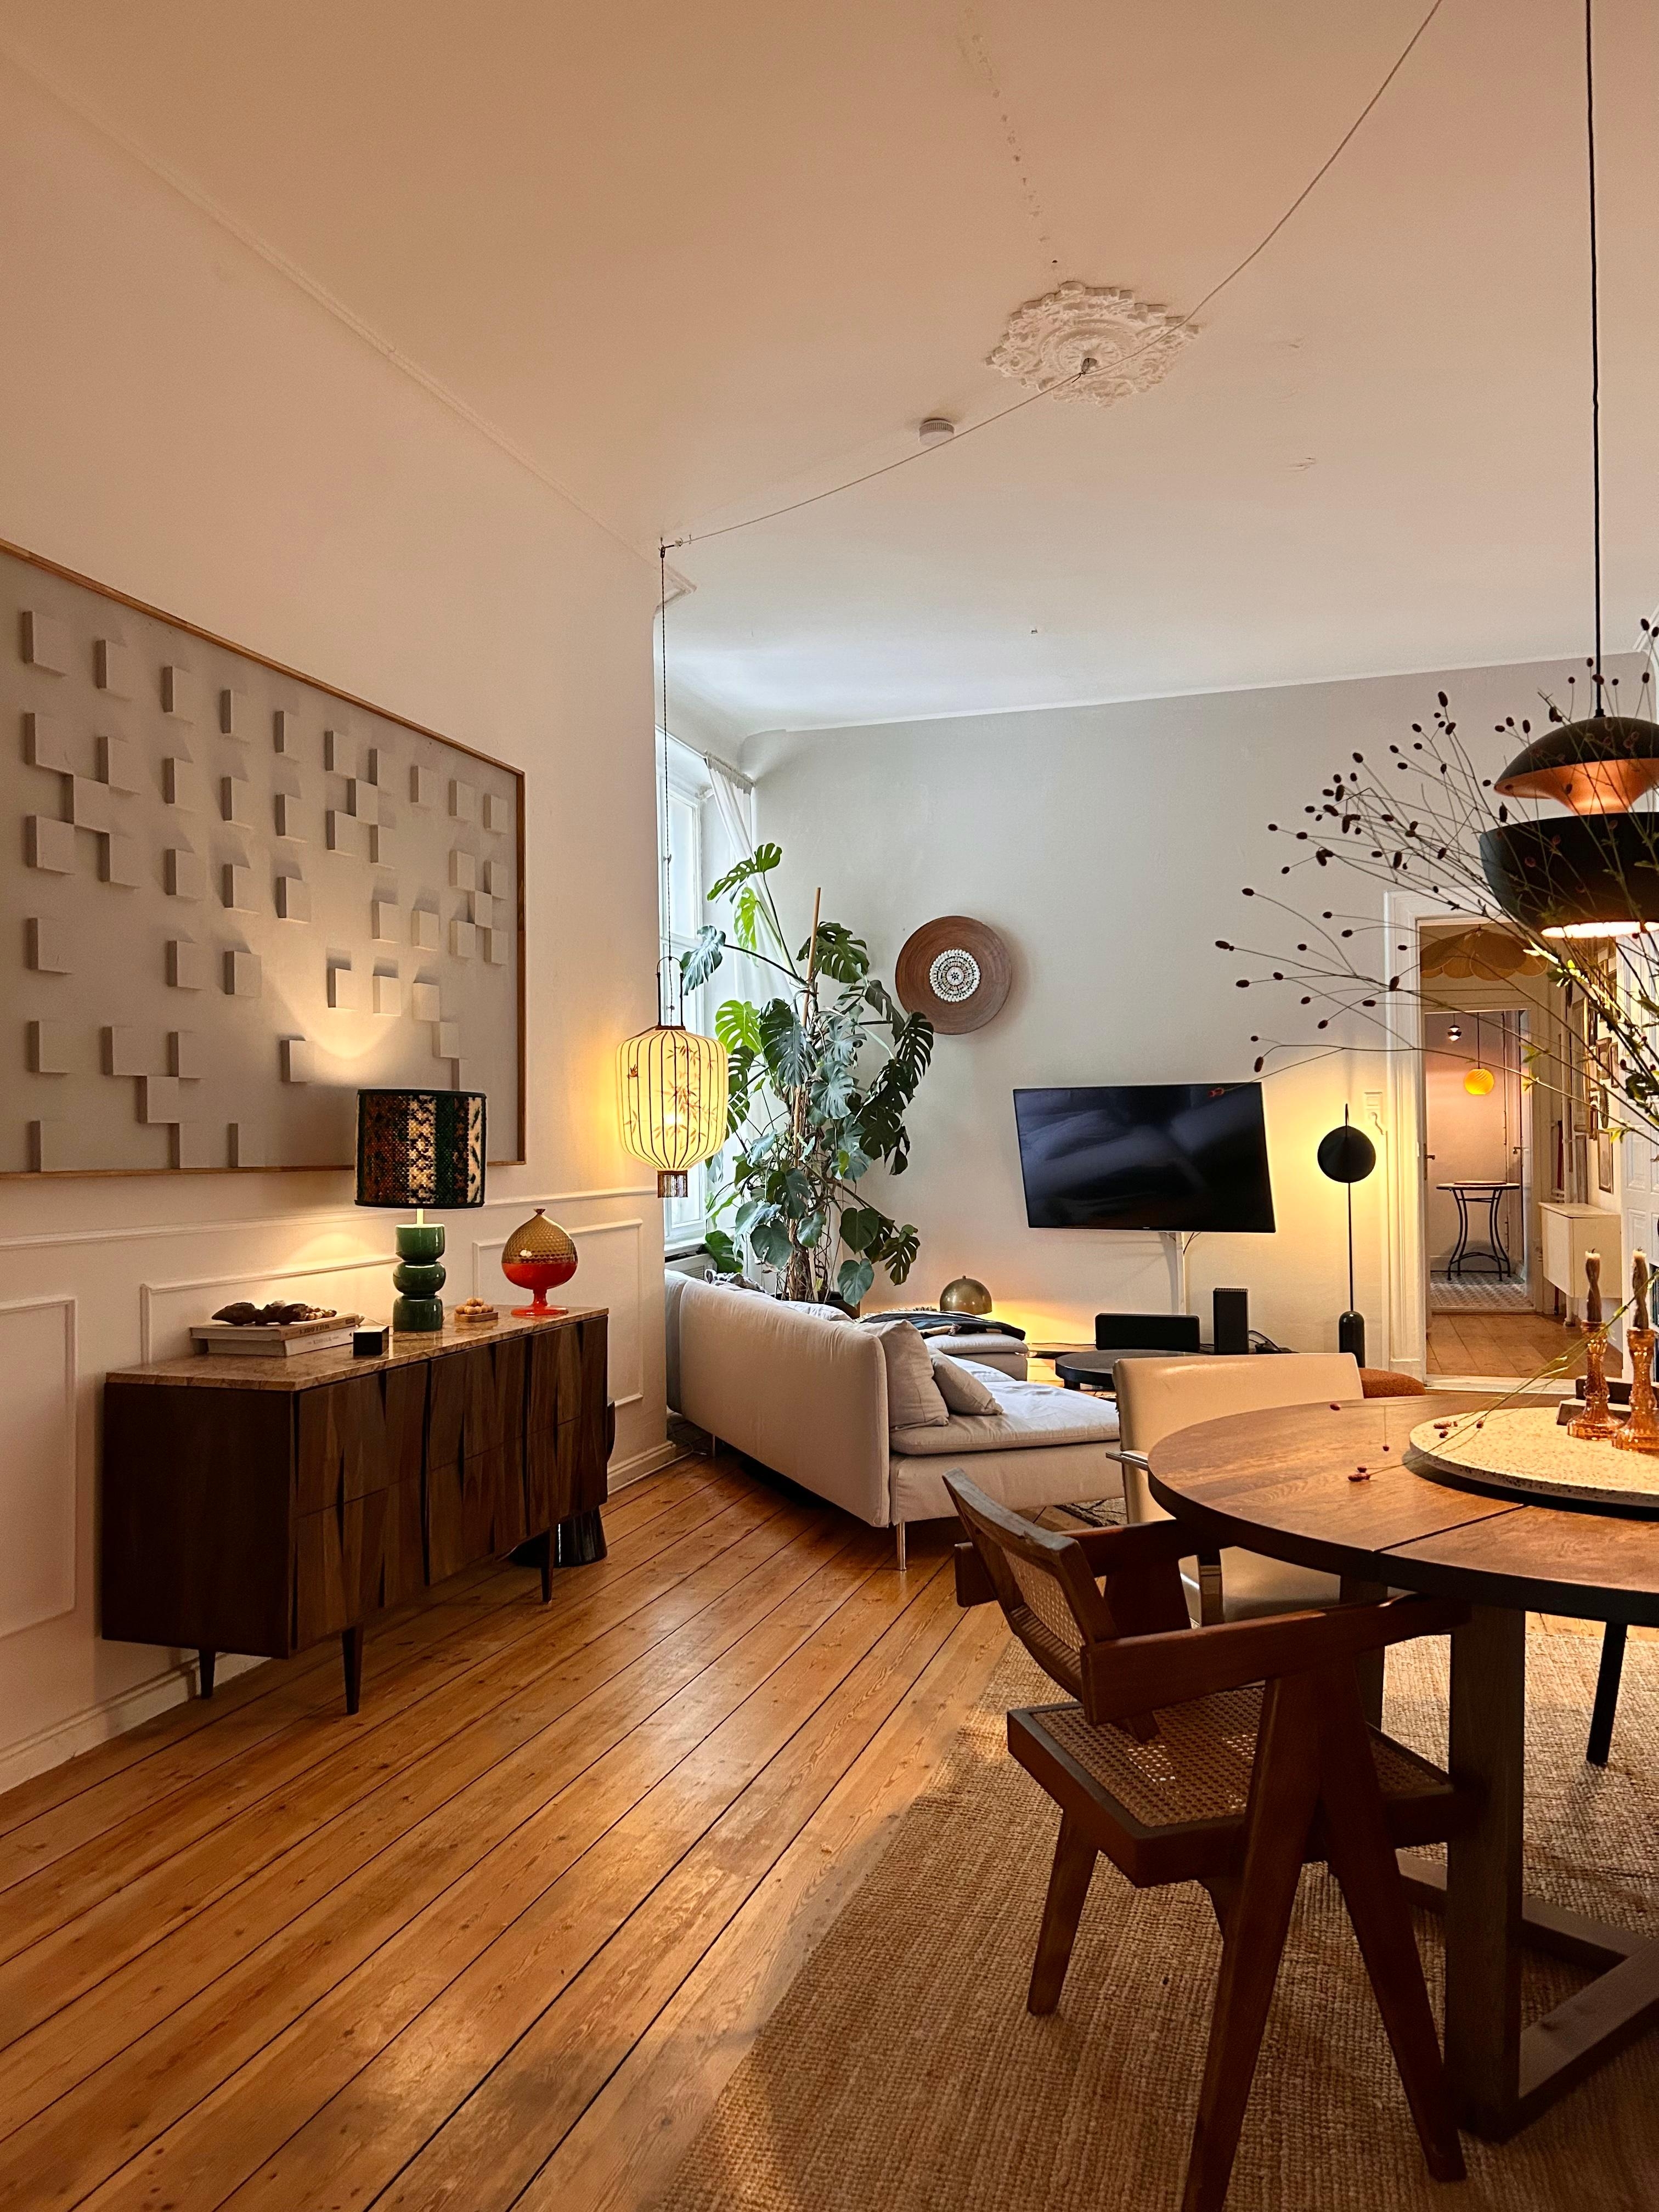 ♥️ #wohnzimmer #esszimmer #couch #altbau #kommode #lampen #kunst #holzboden